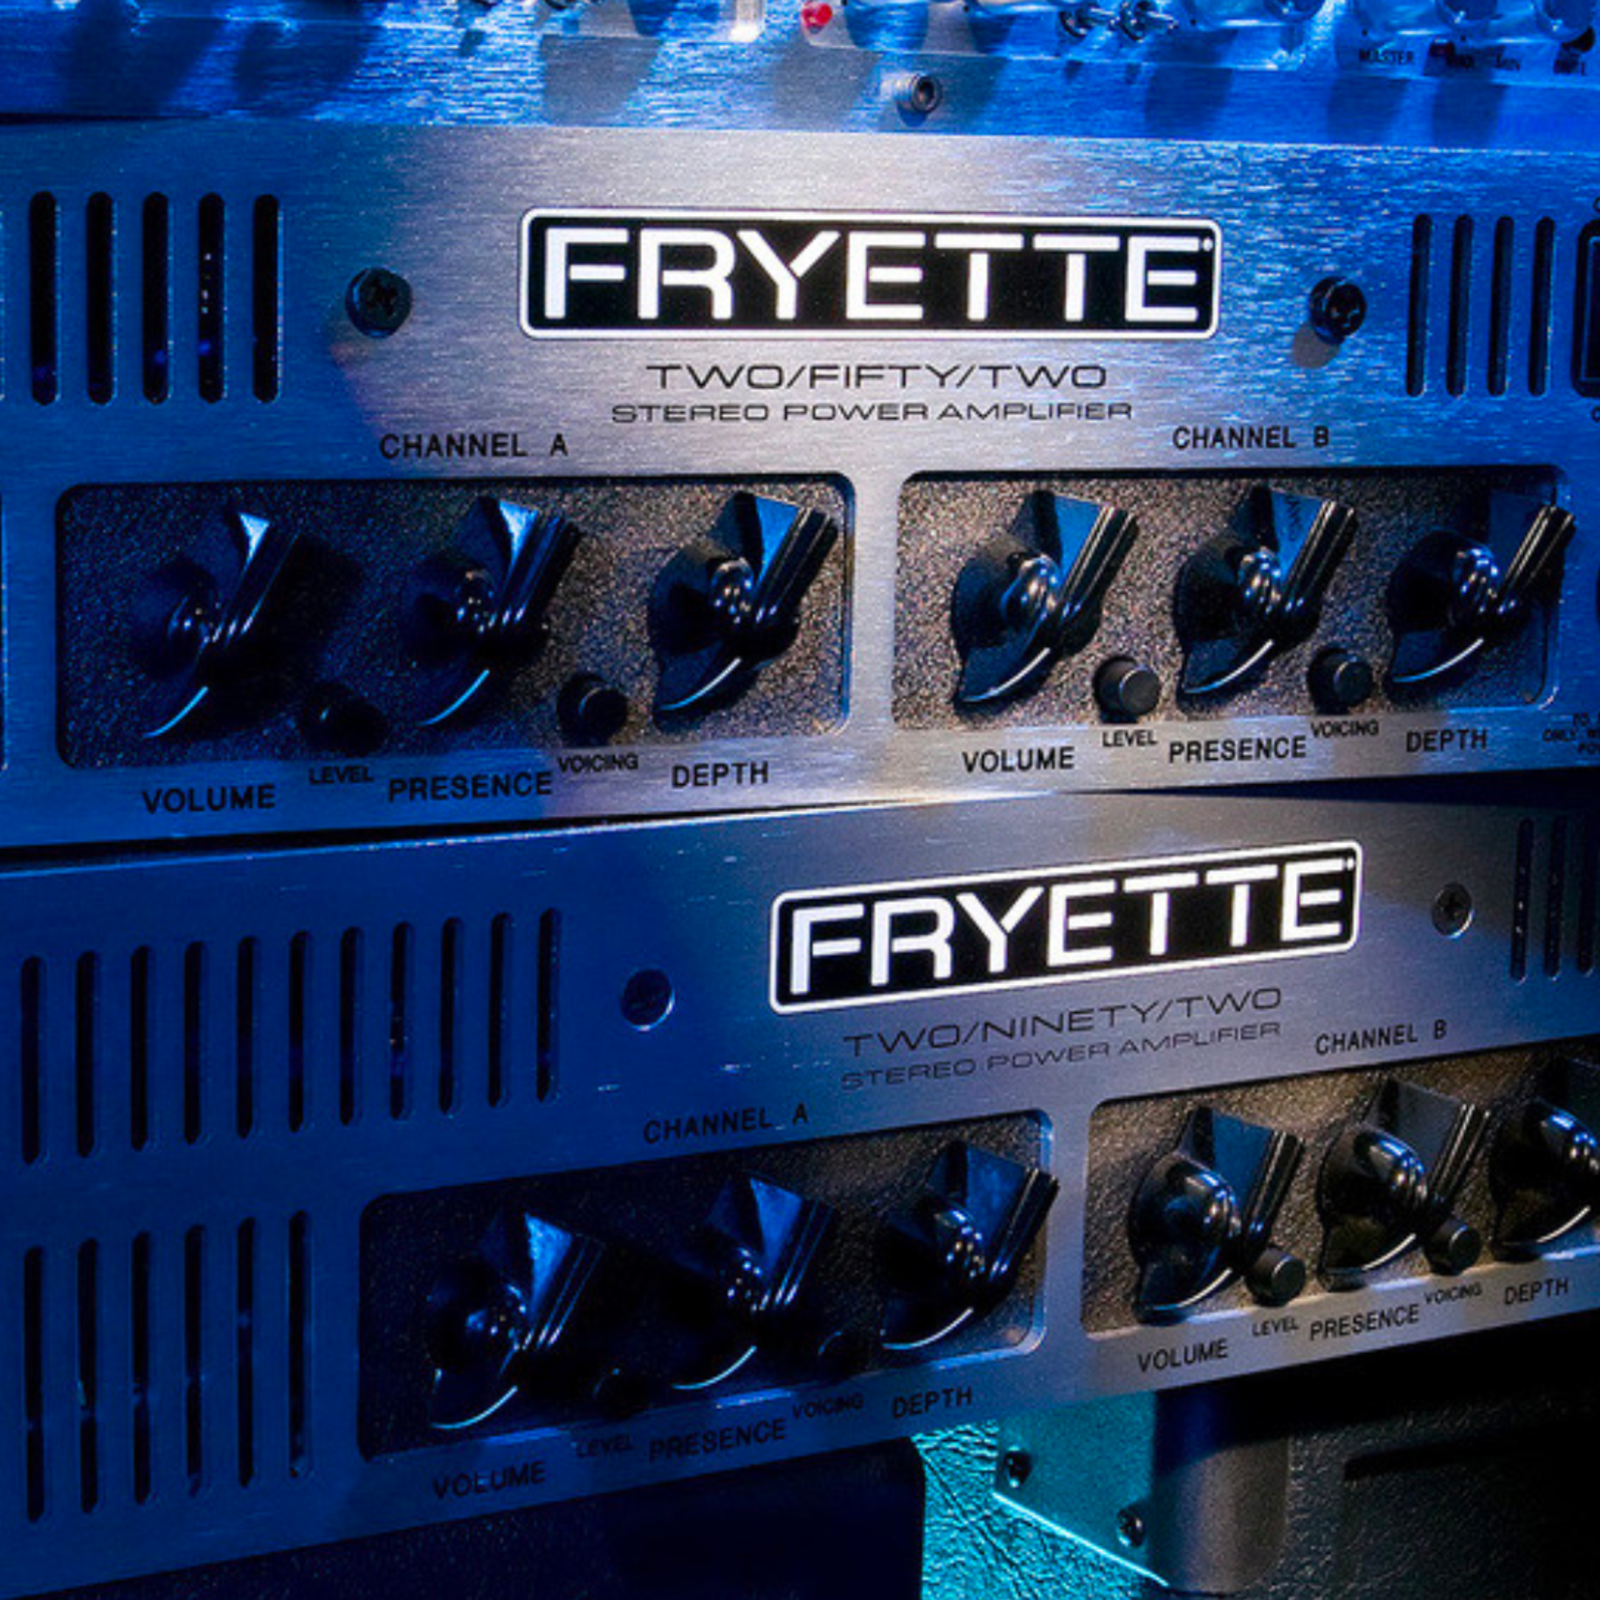 Fryette Amplification Fryette Two/Ninety/Two Stereo Power Amplifier